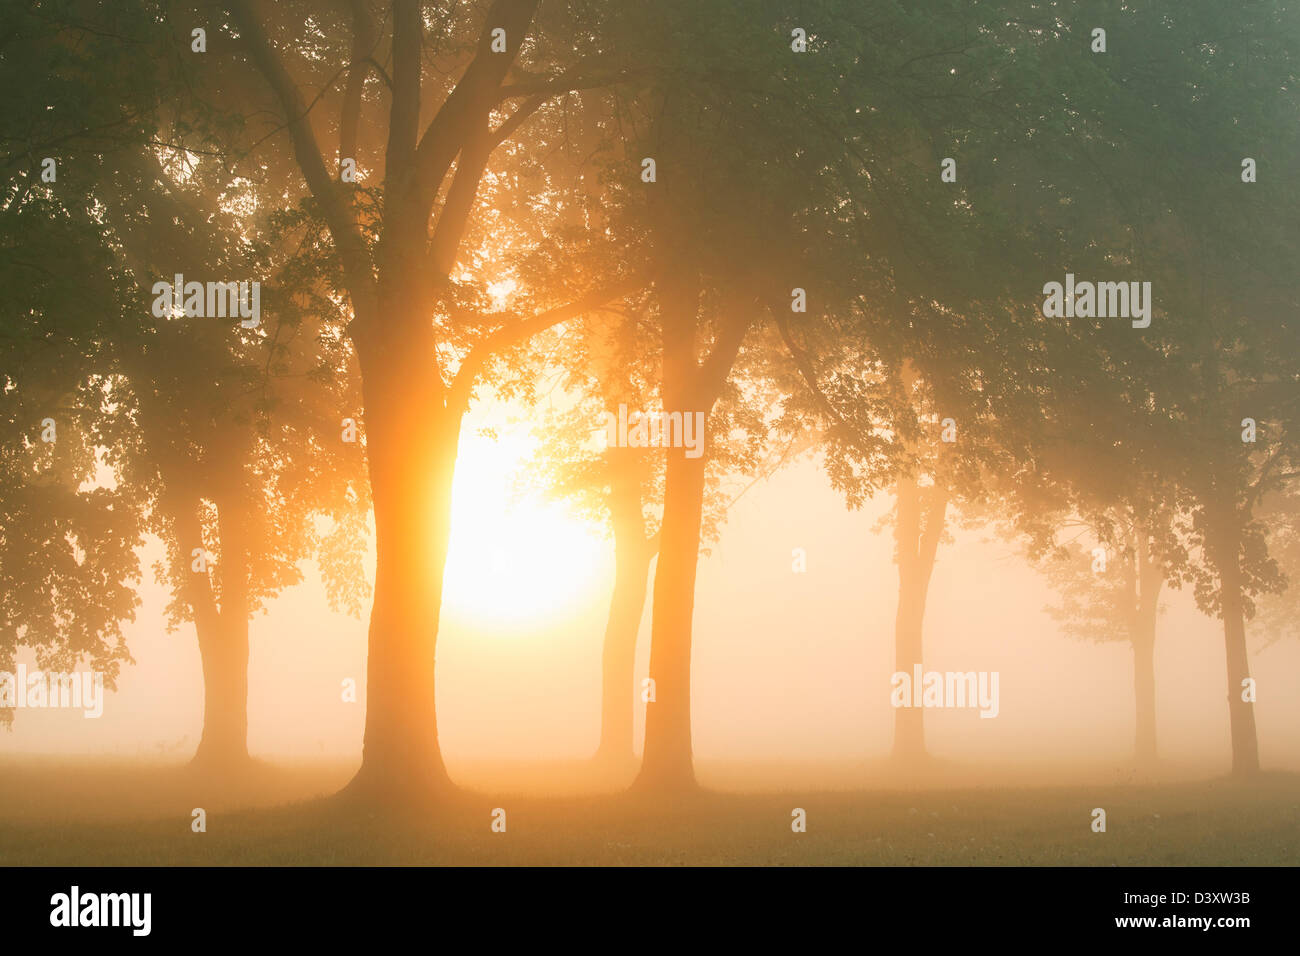 Los árboles al amanecer con niebla de la mañana Foto de stock